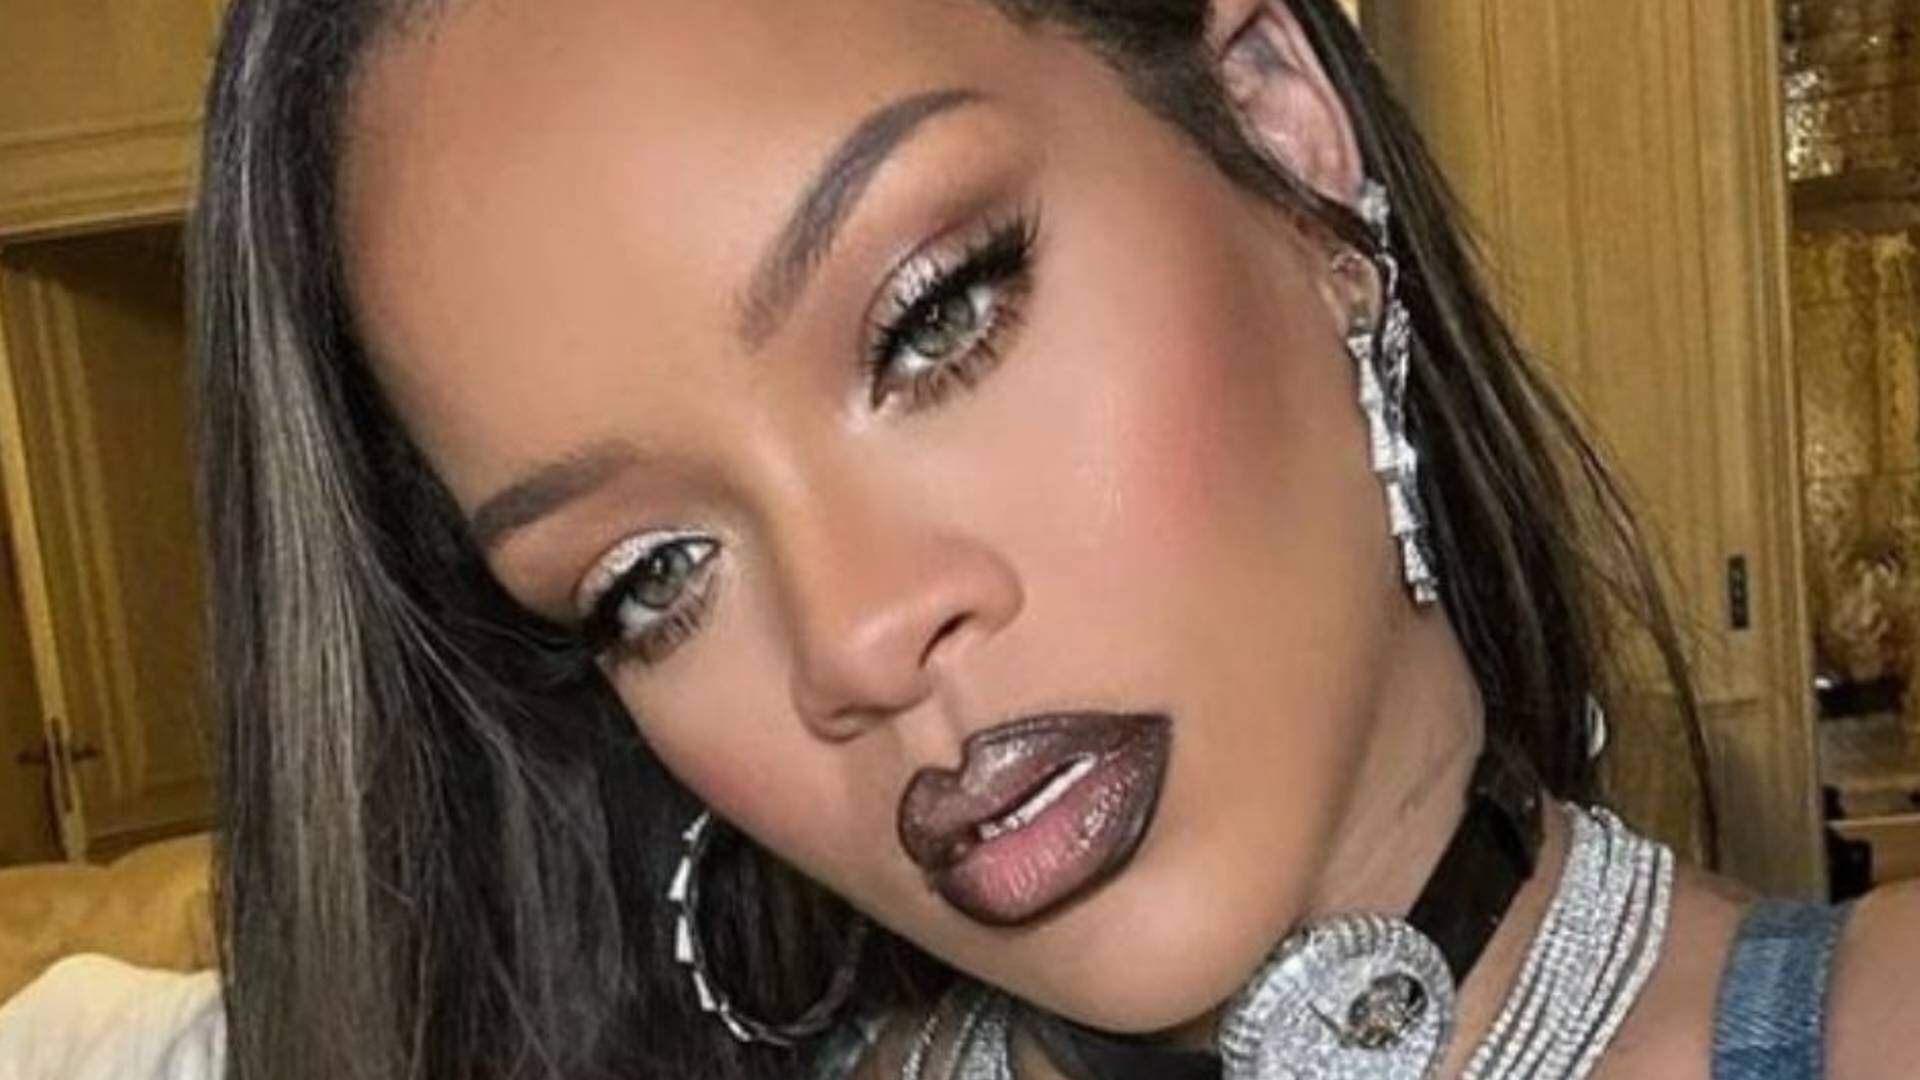 Grávida, Rihanna rouba a cena após ter atitude incomum em festa e dá o que falar na web - Metropolitana FM